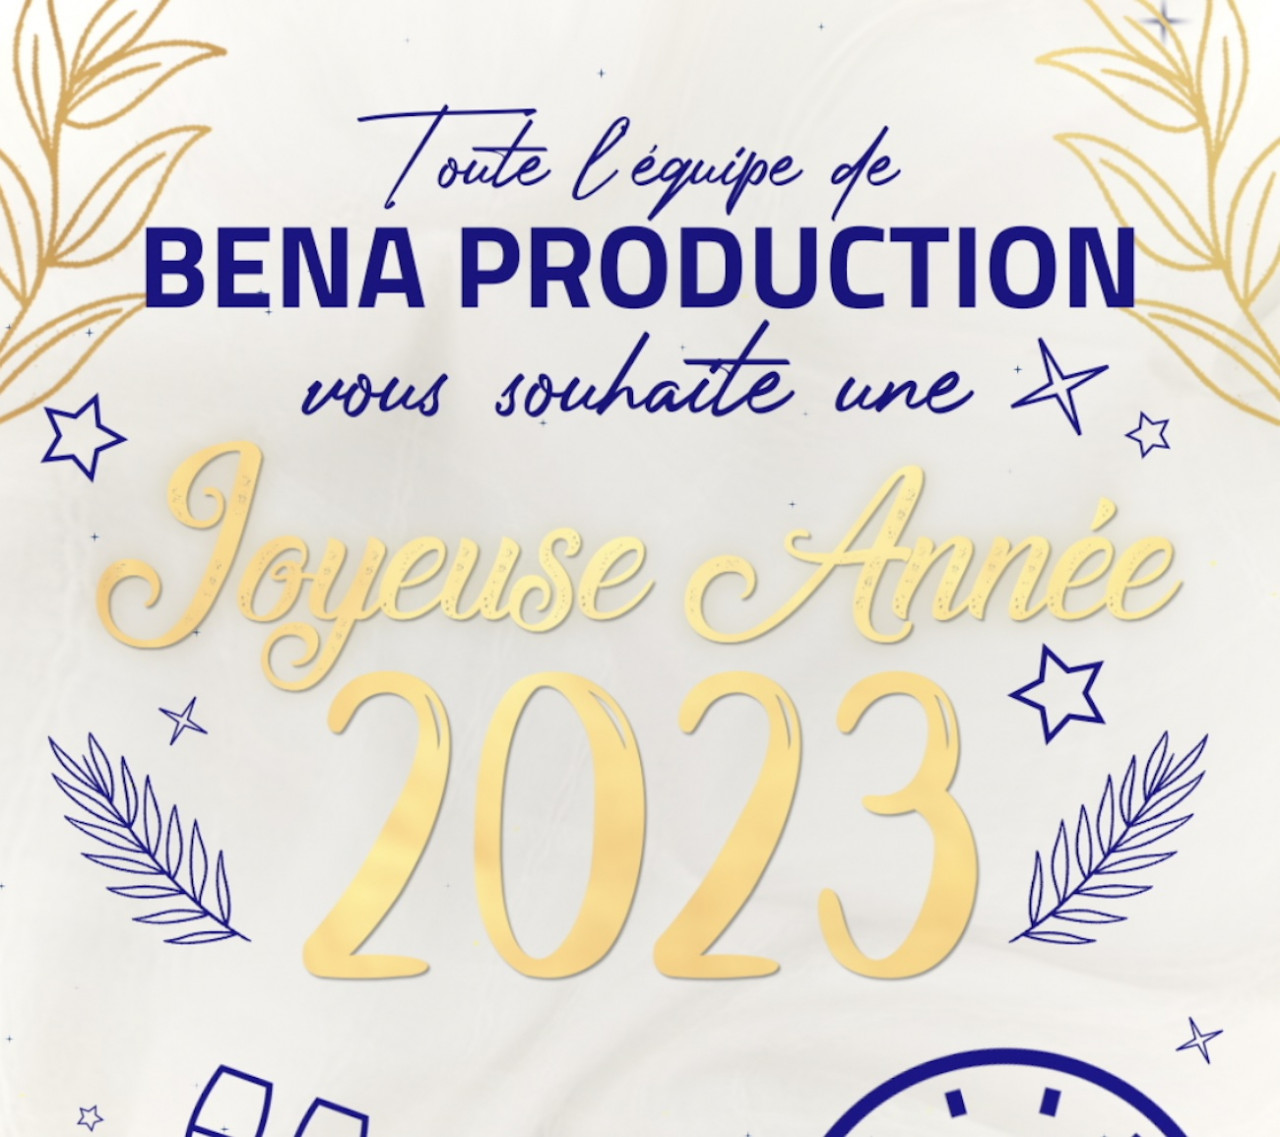 Toute l'équipe de BENA PRODUCTION vous souhaite une joyeuse année 2023 !